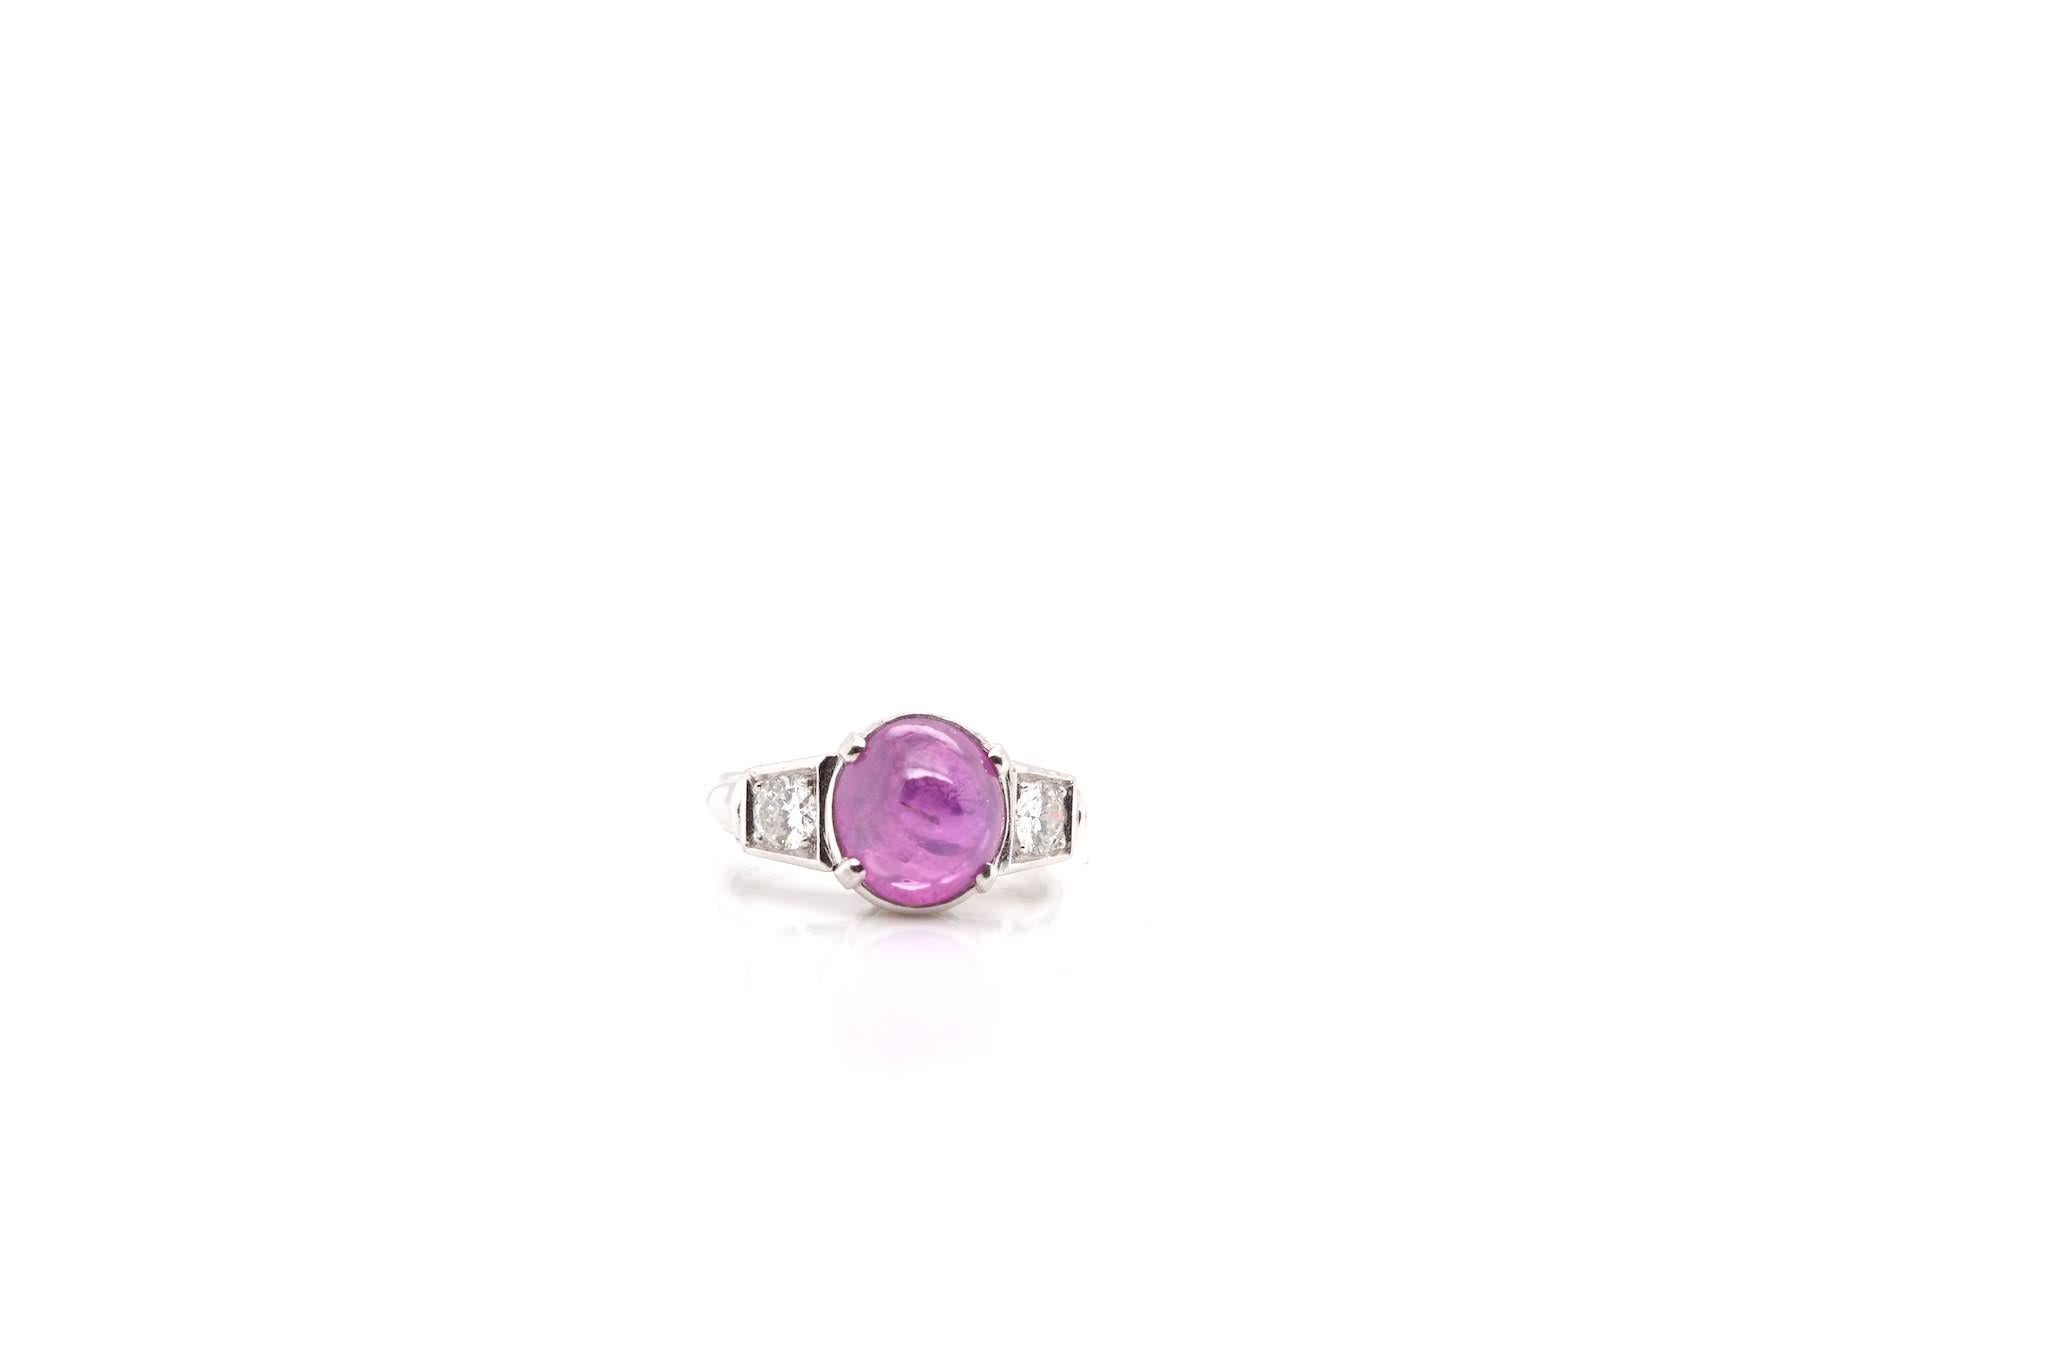 Steine: Star Ceylon rosa Saphir und Diamanten
Brillantschliff mit einem Gesamtgewicht von 0,40 Karat
MATERIAL: Platin
Abmessungen: 10×10 mm
Zeitraum: 1930
Gewicht: 7,1g
Größe: 50.5 (freie Größenwahl)
-Labor-Zertifikat
Zertifikat
Bez.: 22508